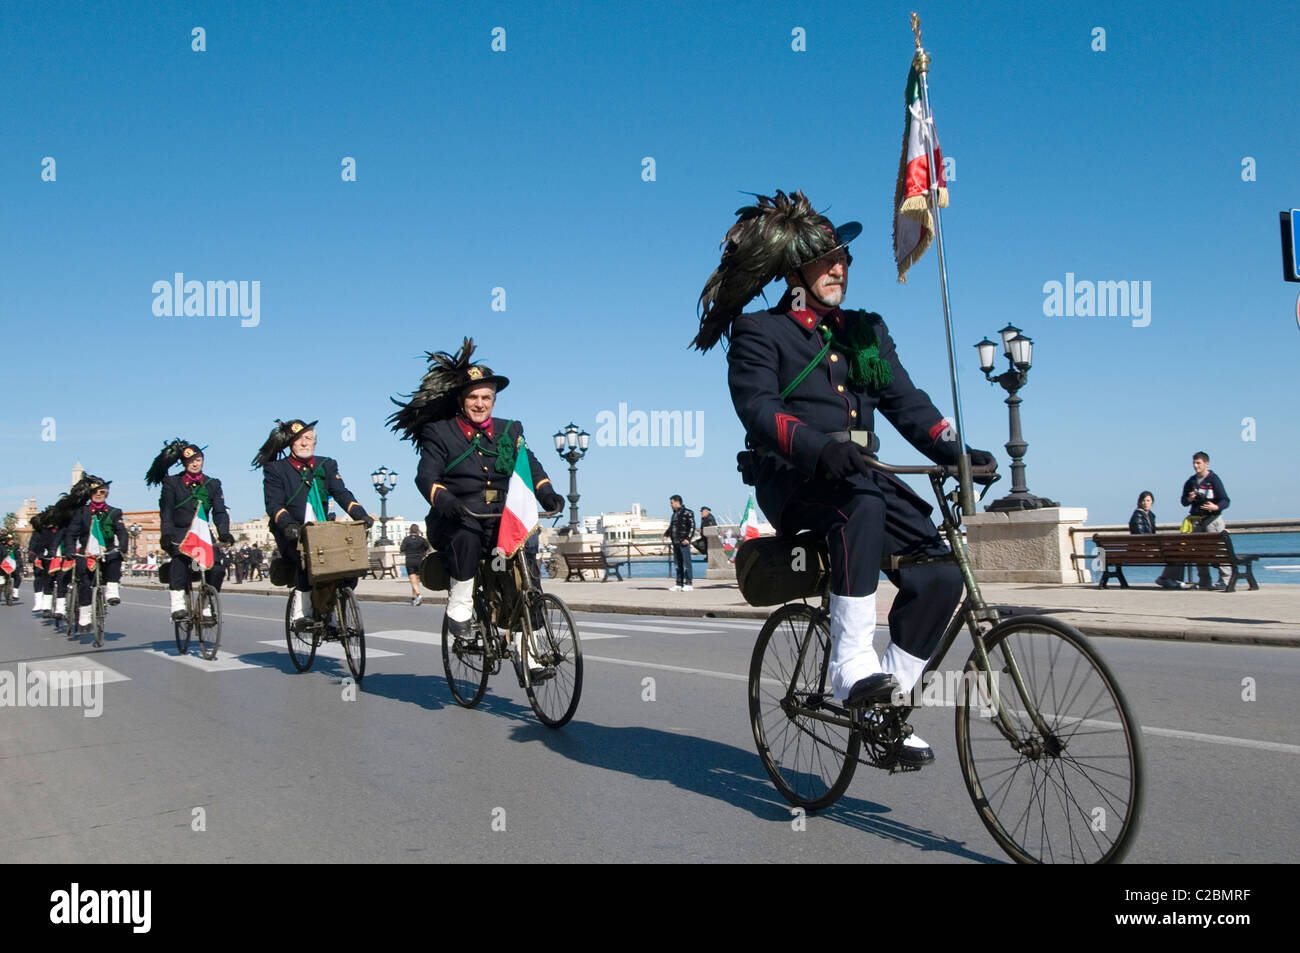 L'armée italienne Bersaglieri italie uniformes uniforme en plumes chapeaux Chapeau élégant style cool riding bikes cycles cycle vélo Banque D'Images